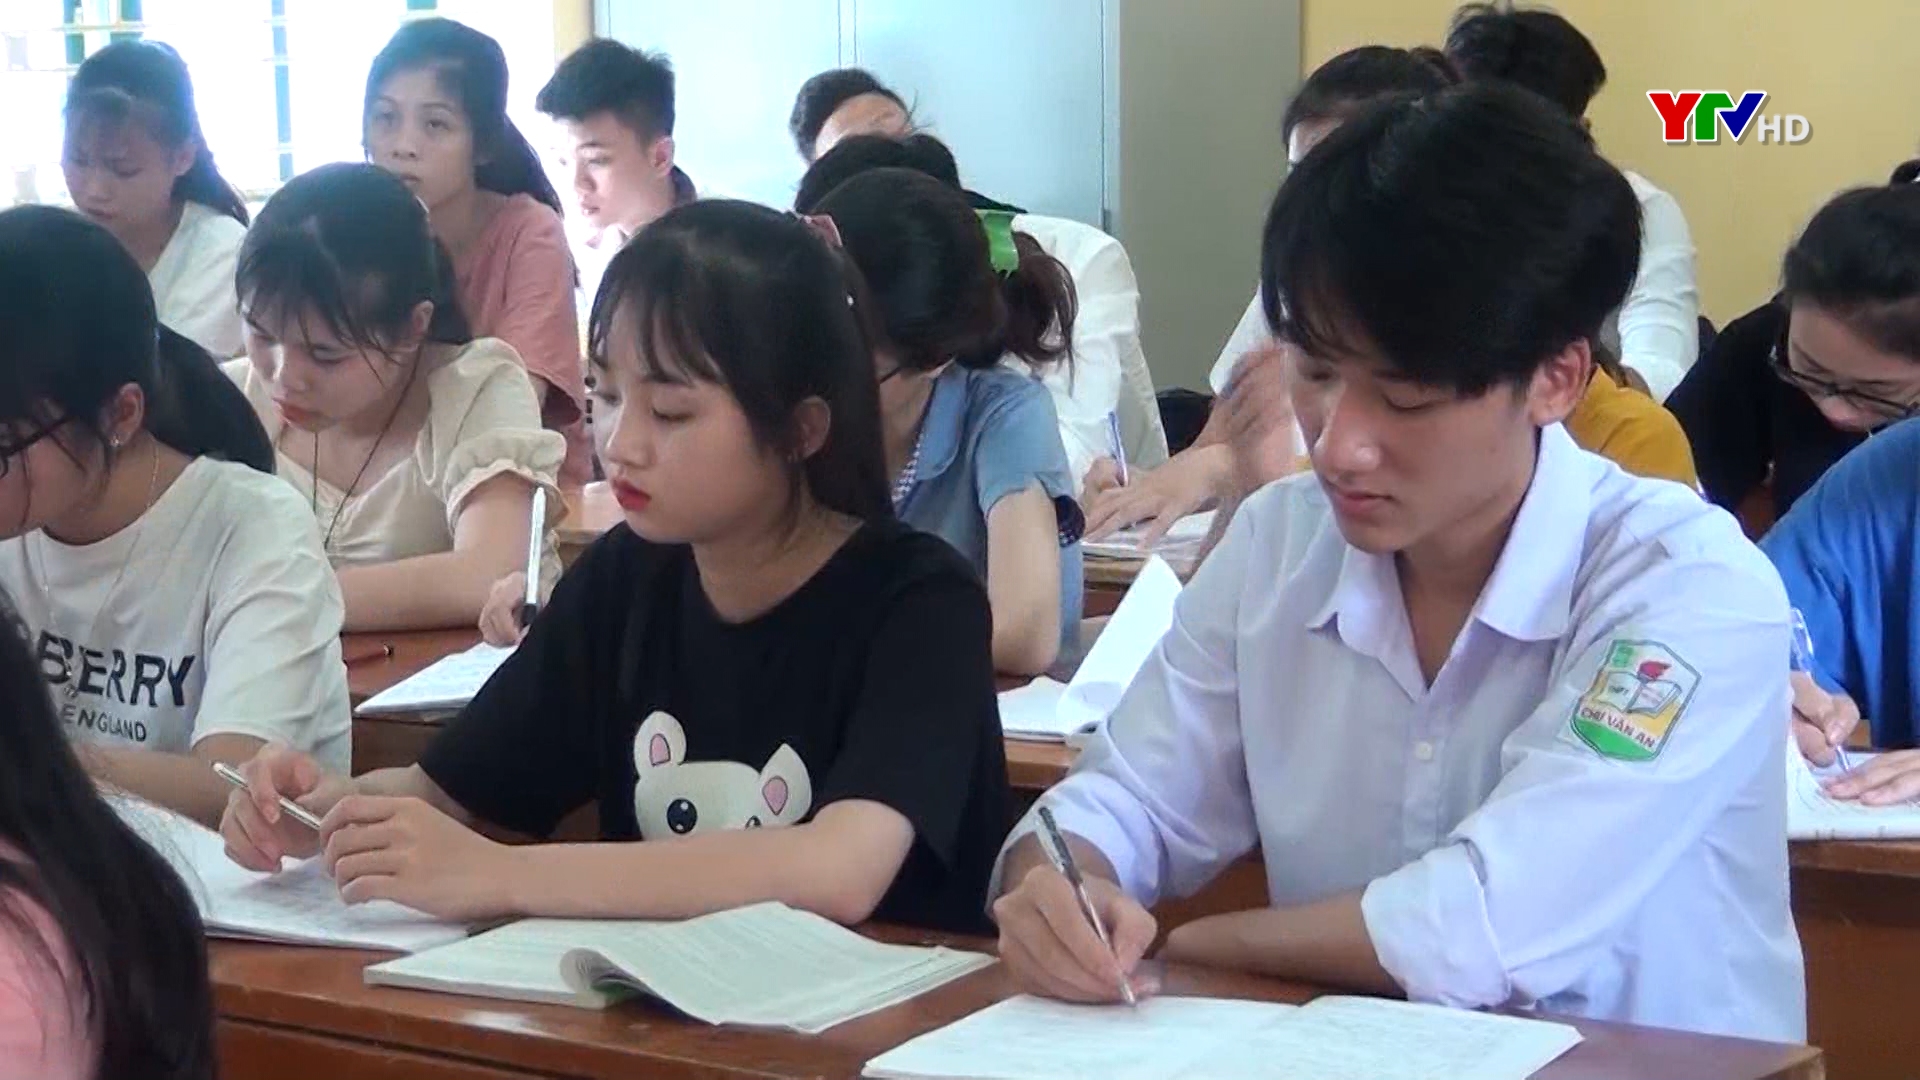 Huyện Văn Yên sẵn sàng các phương án đảm bảo kỳ thi tốt nghiệp THPT năm 2020 diễn ra an toàn